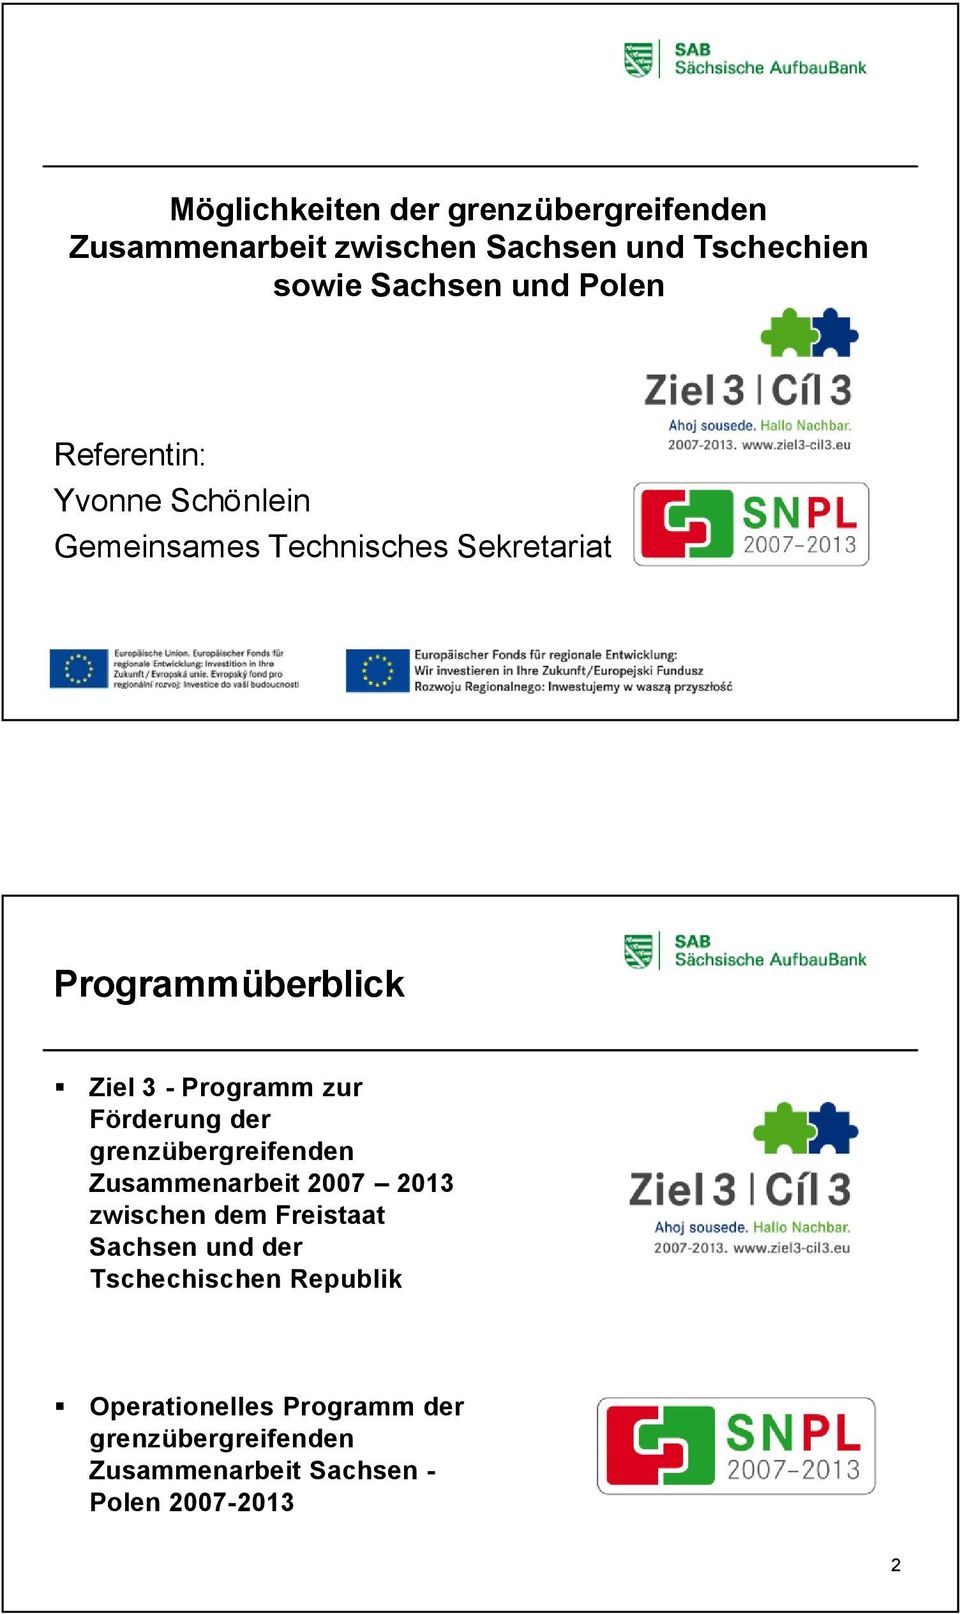 zur Förderung der grenzübergreifenden Zusammenarbeit 2007 2013 zwischen dem Freistaat Sachsen und der